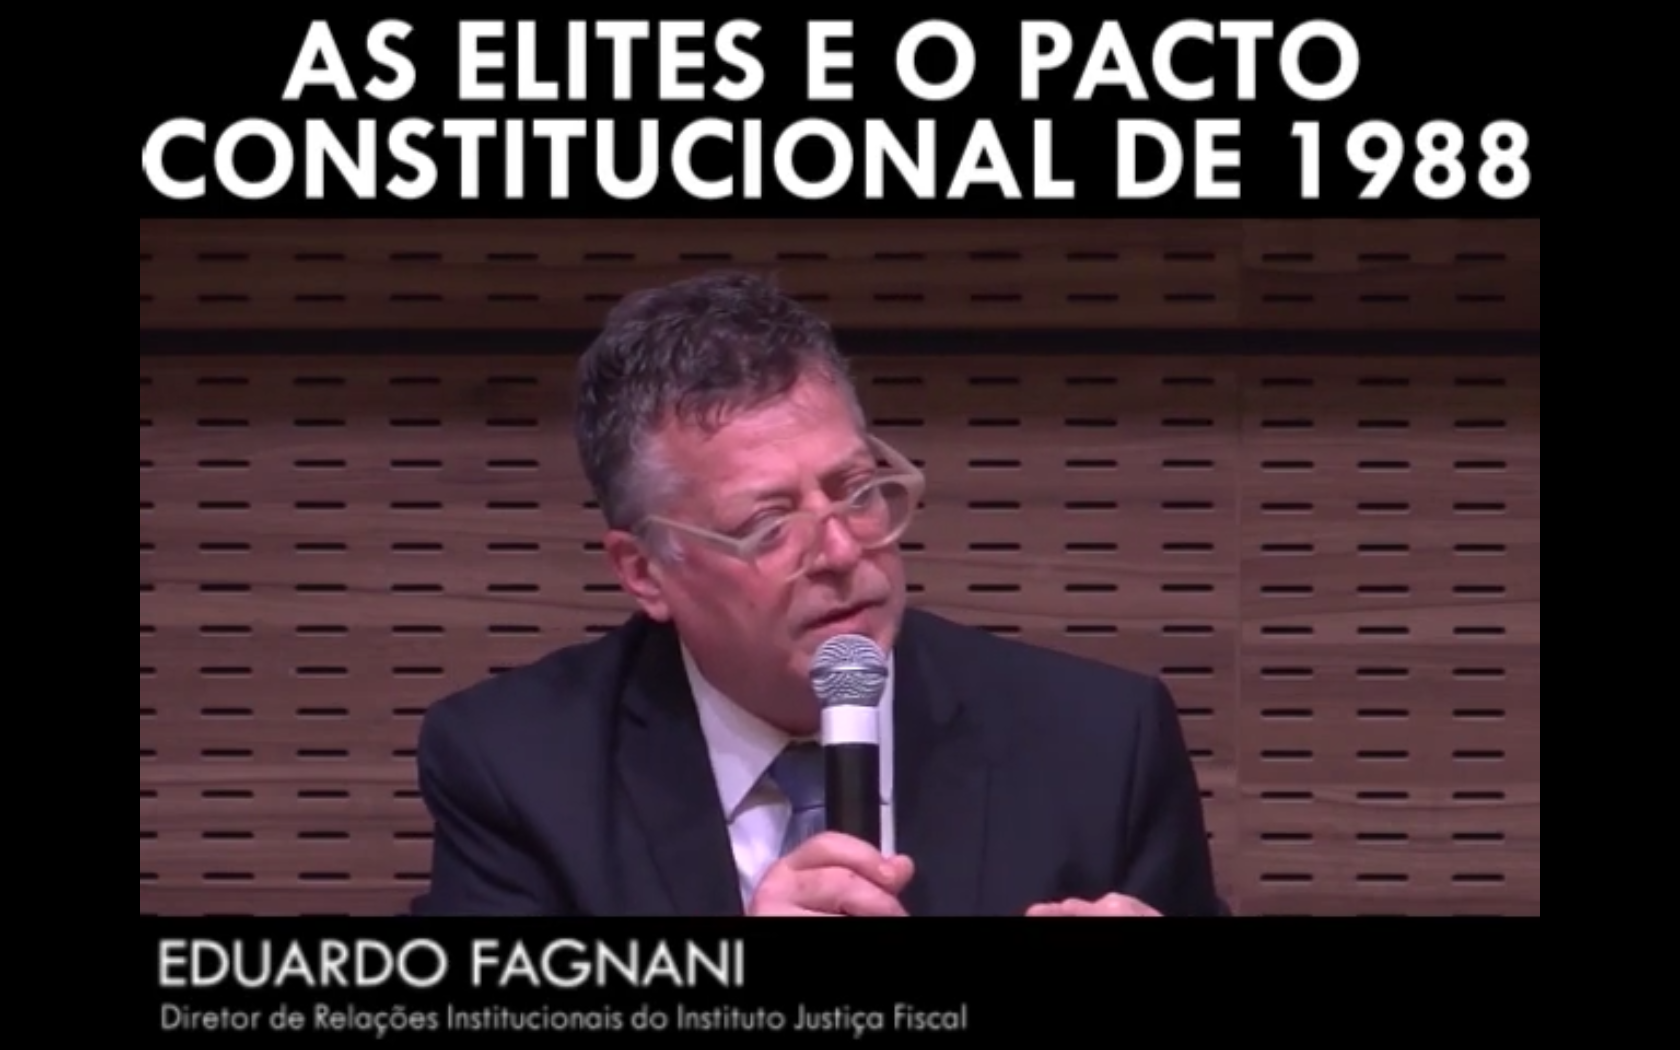 As elites e o pacto constitucional de 1988 - Eduardo Fagnani